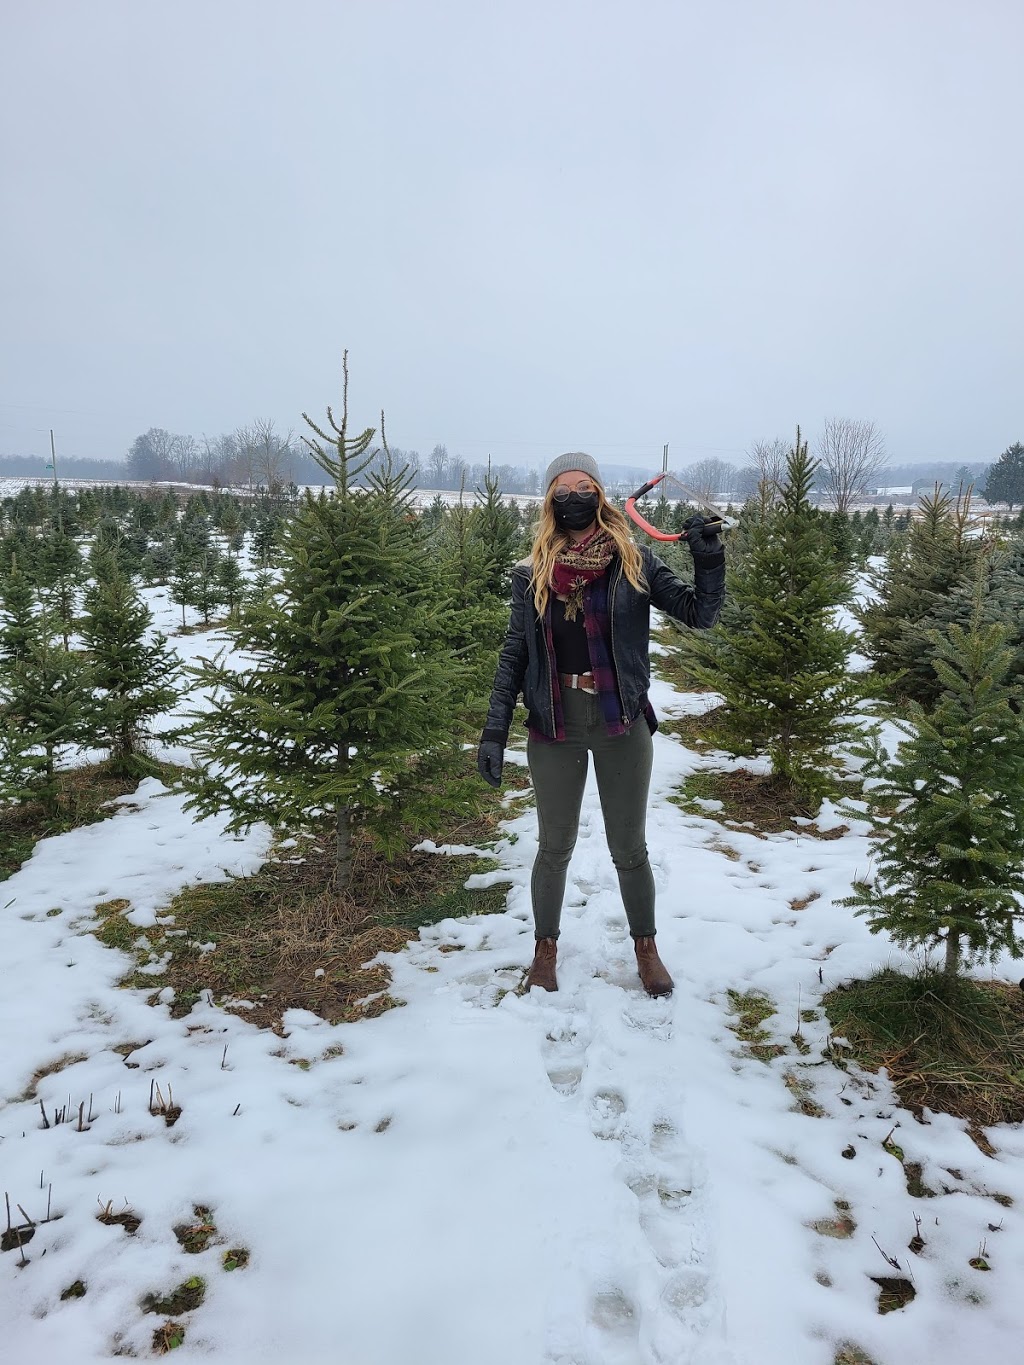 Vanderklooster Christmas Trees | 424847 Substation Rd, Burgessville, ON N0J 1C0, Canada | Phone: (519) 535-0215